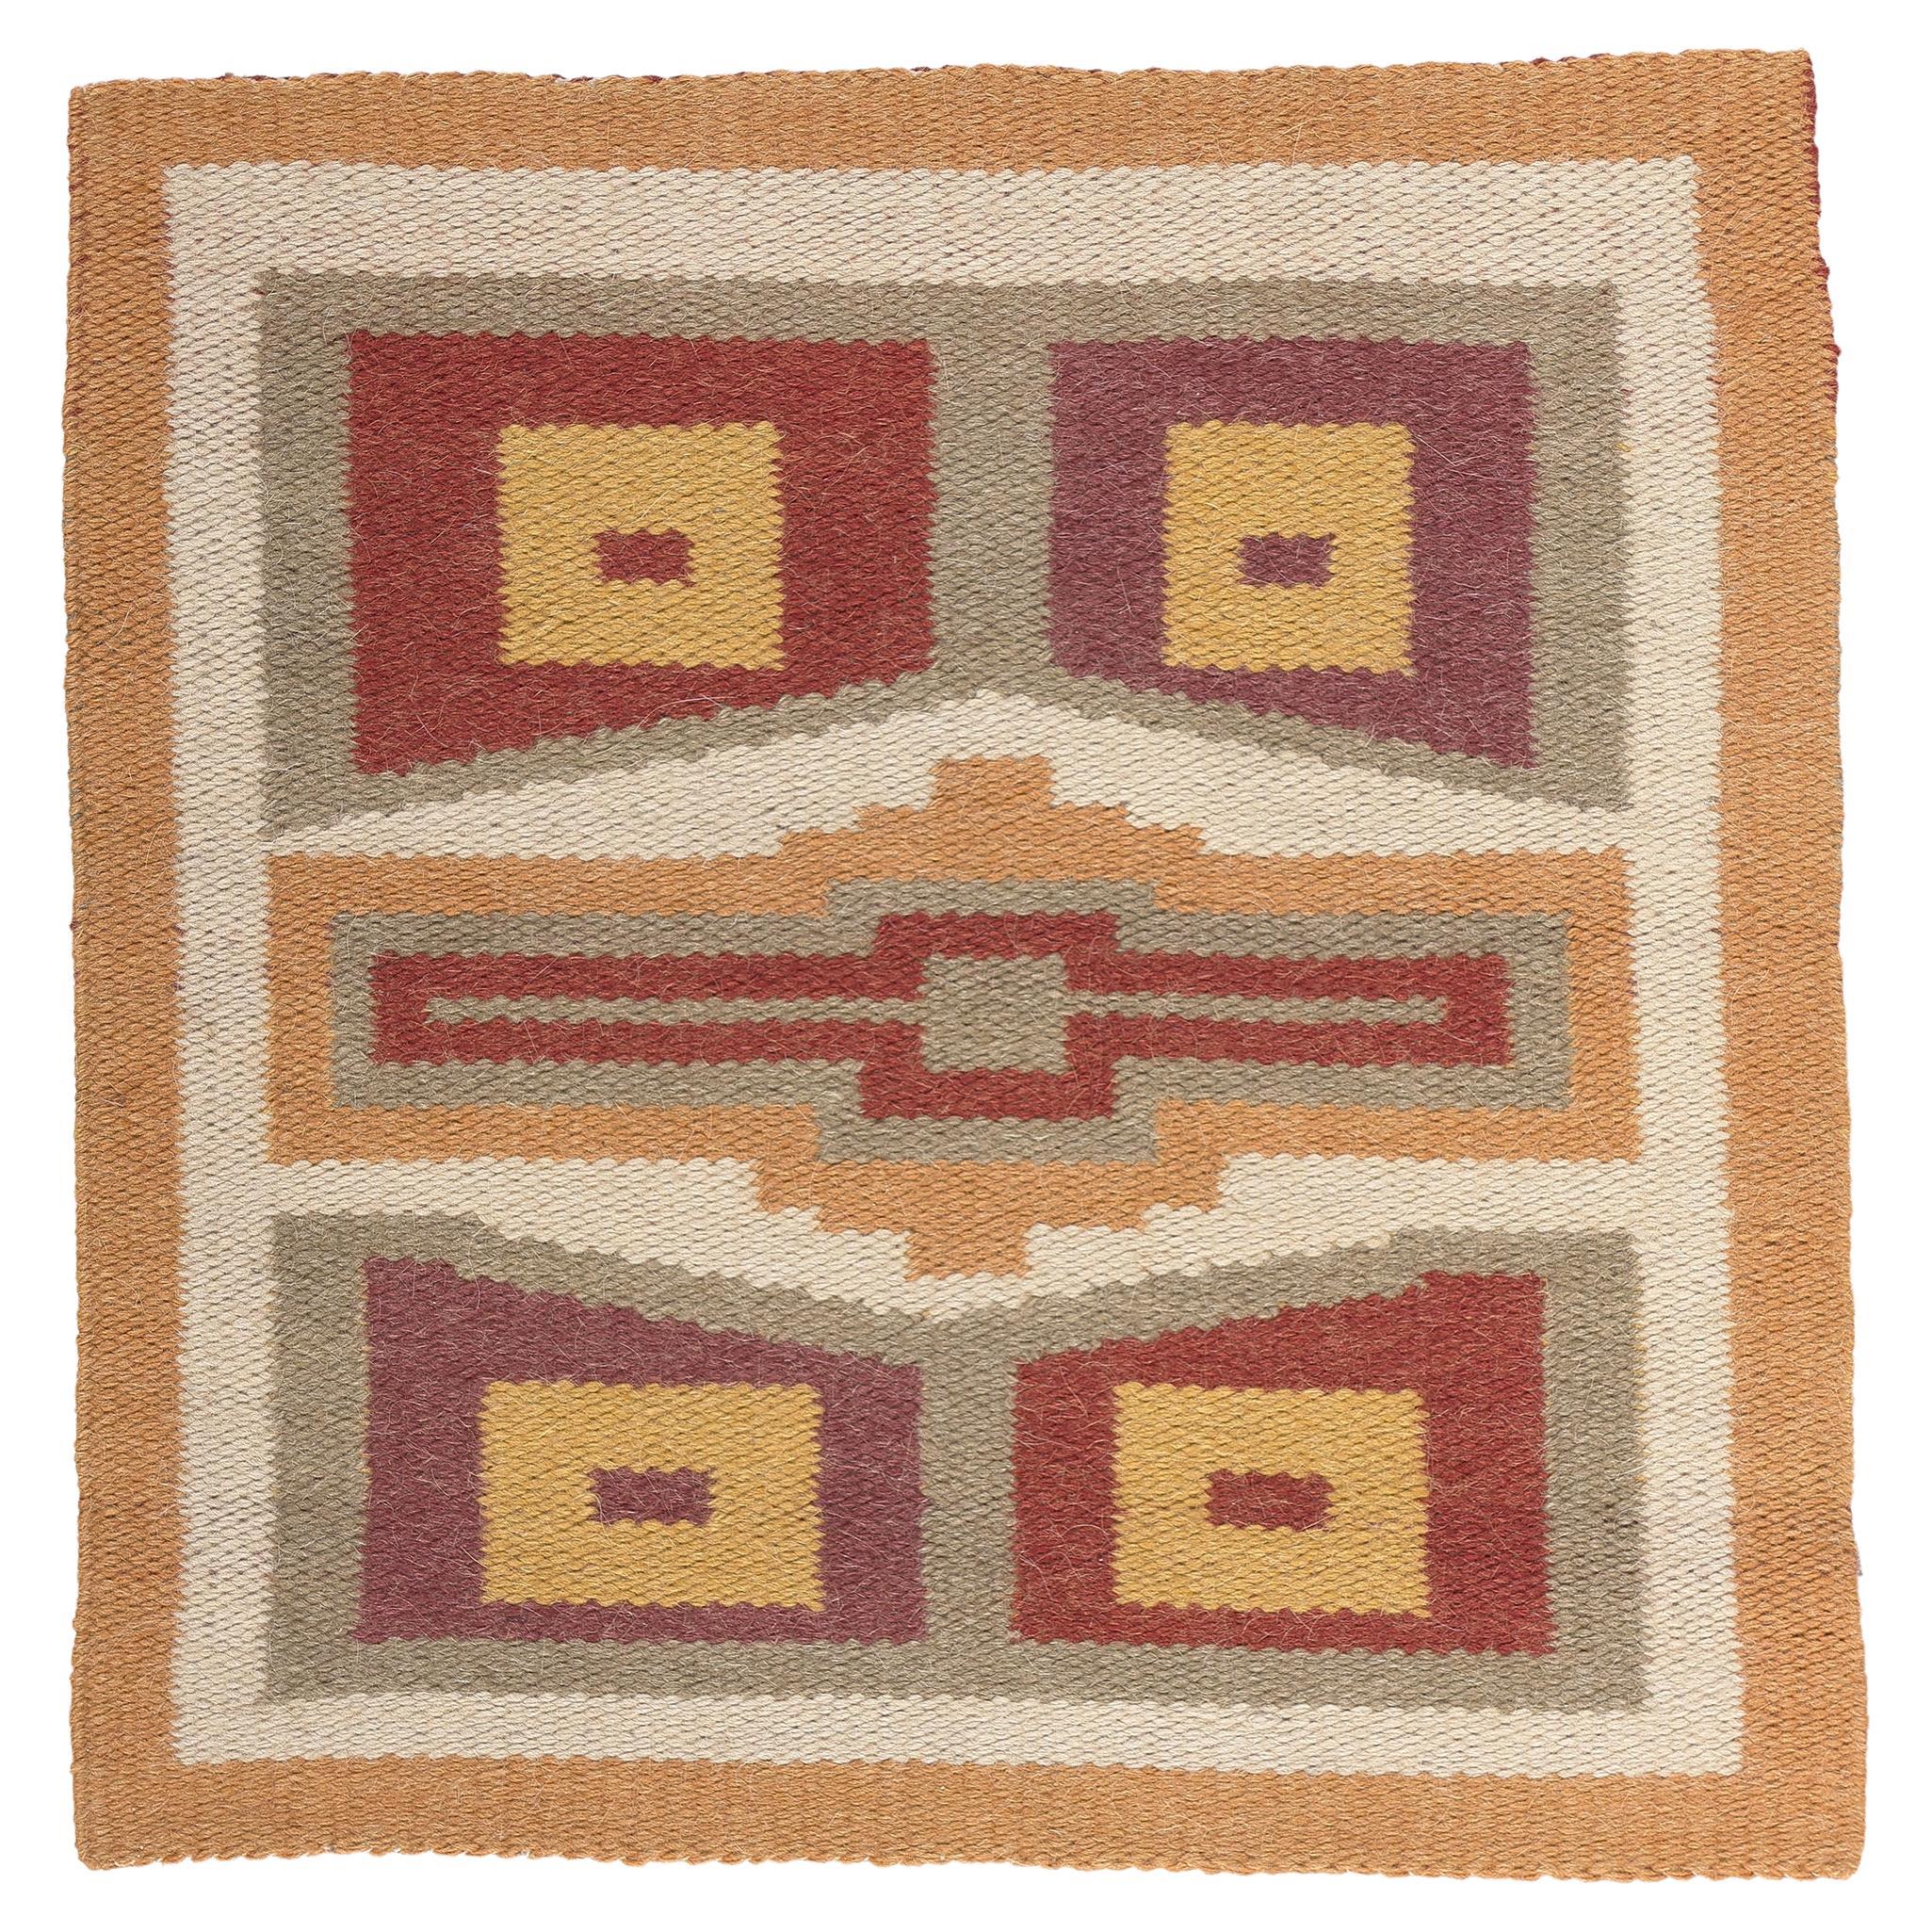 Antique Native American Indian Teec Nos Pos Navajo Rug Textile